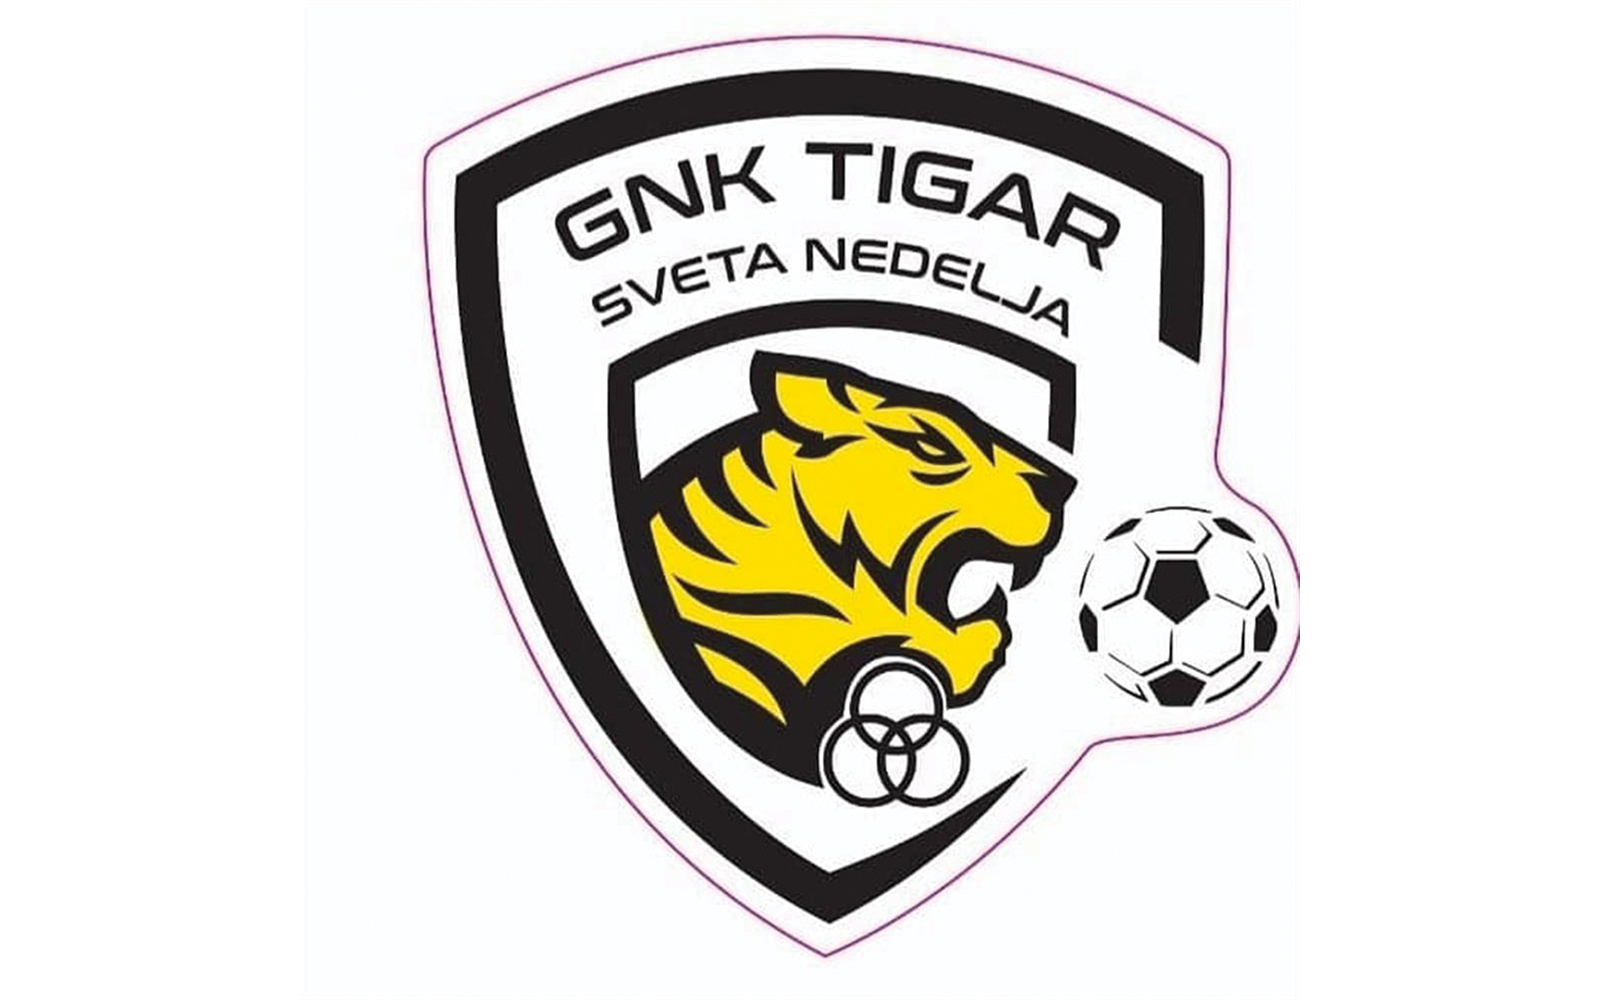 4. nogometna liga sredite Zagreb  B - 2. kolo
GNK Tigar Sveta Nedjelja  Gradii 5:1 (1:0)